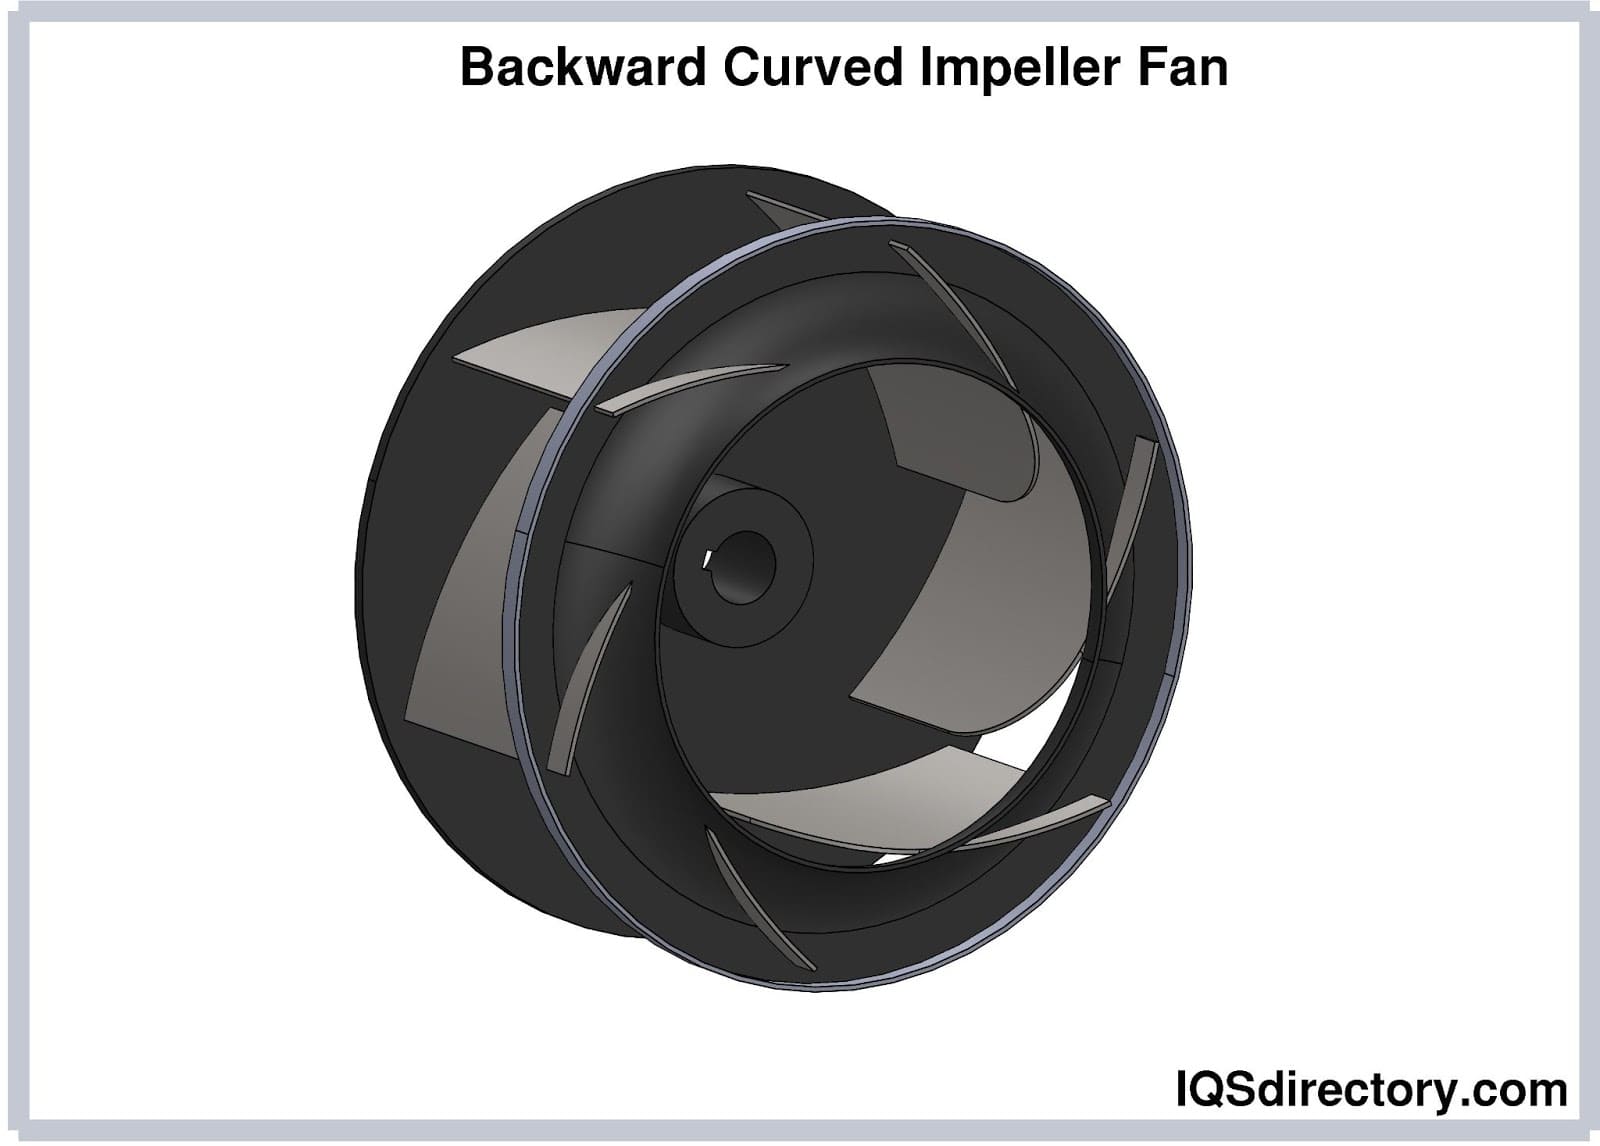 Backward Curved Impeller Fan